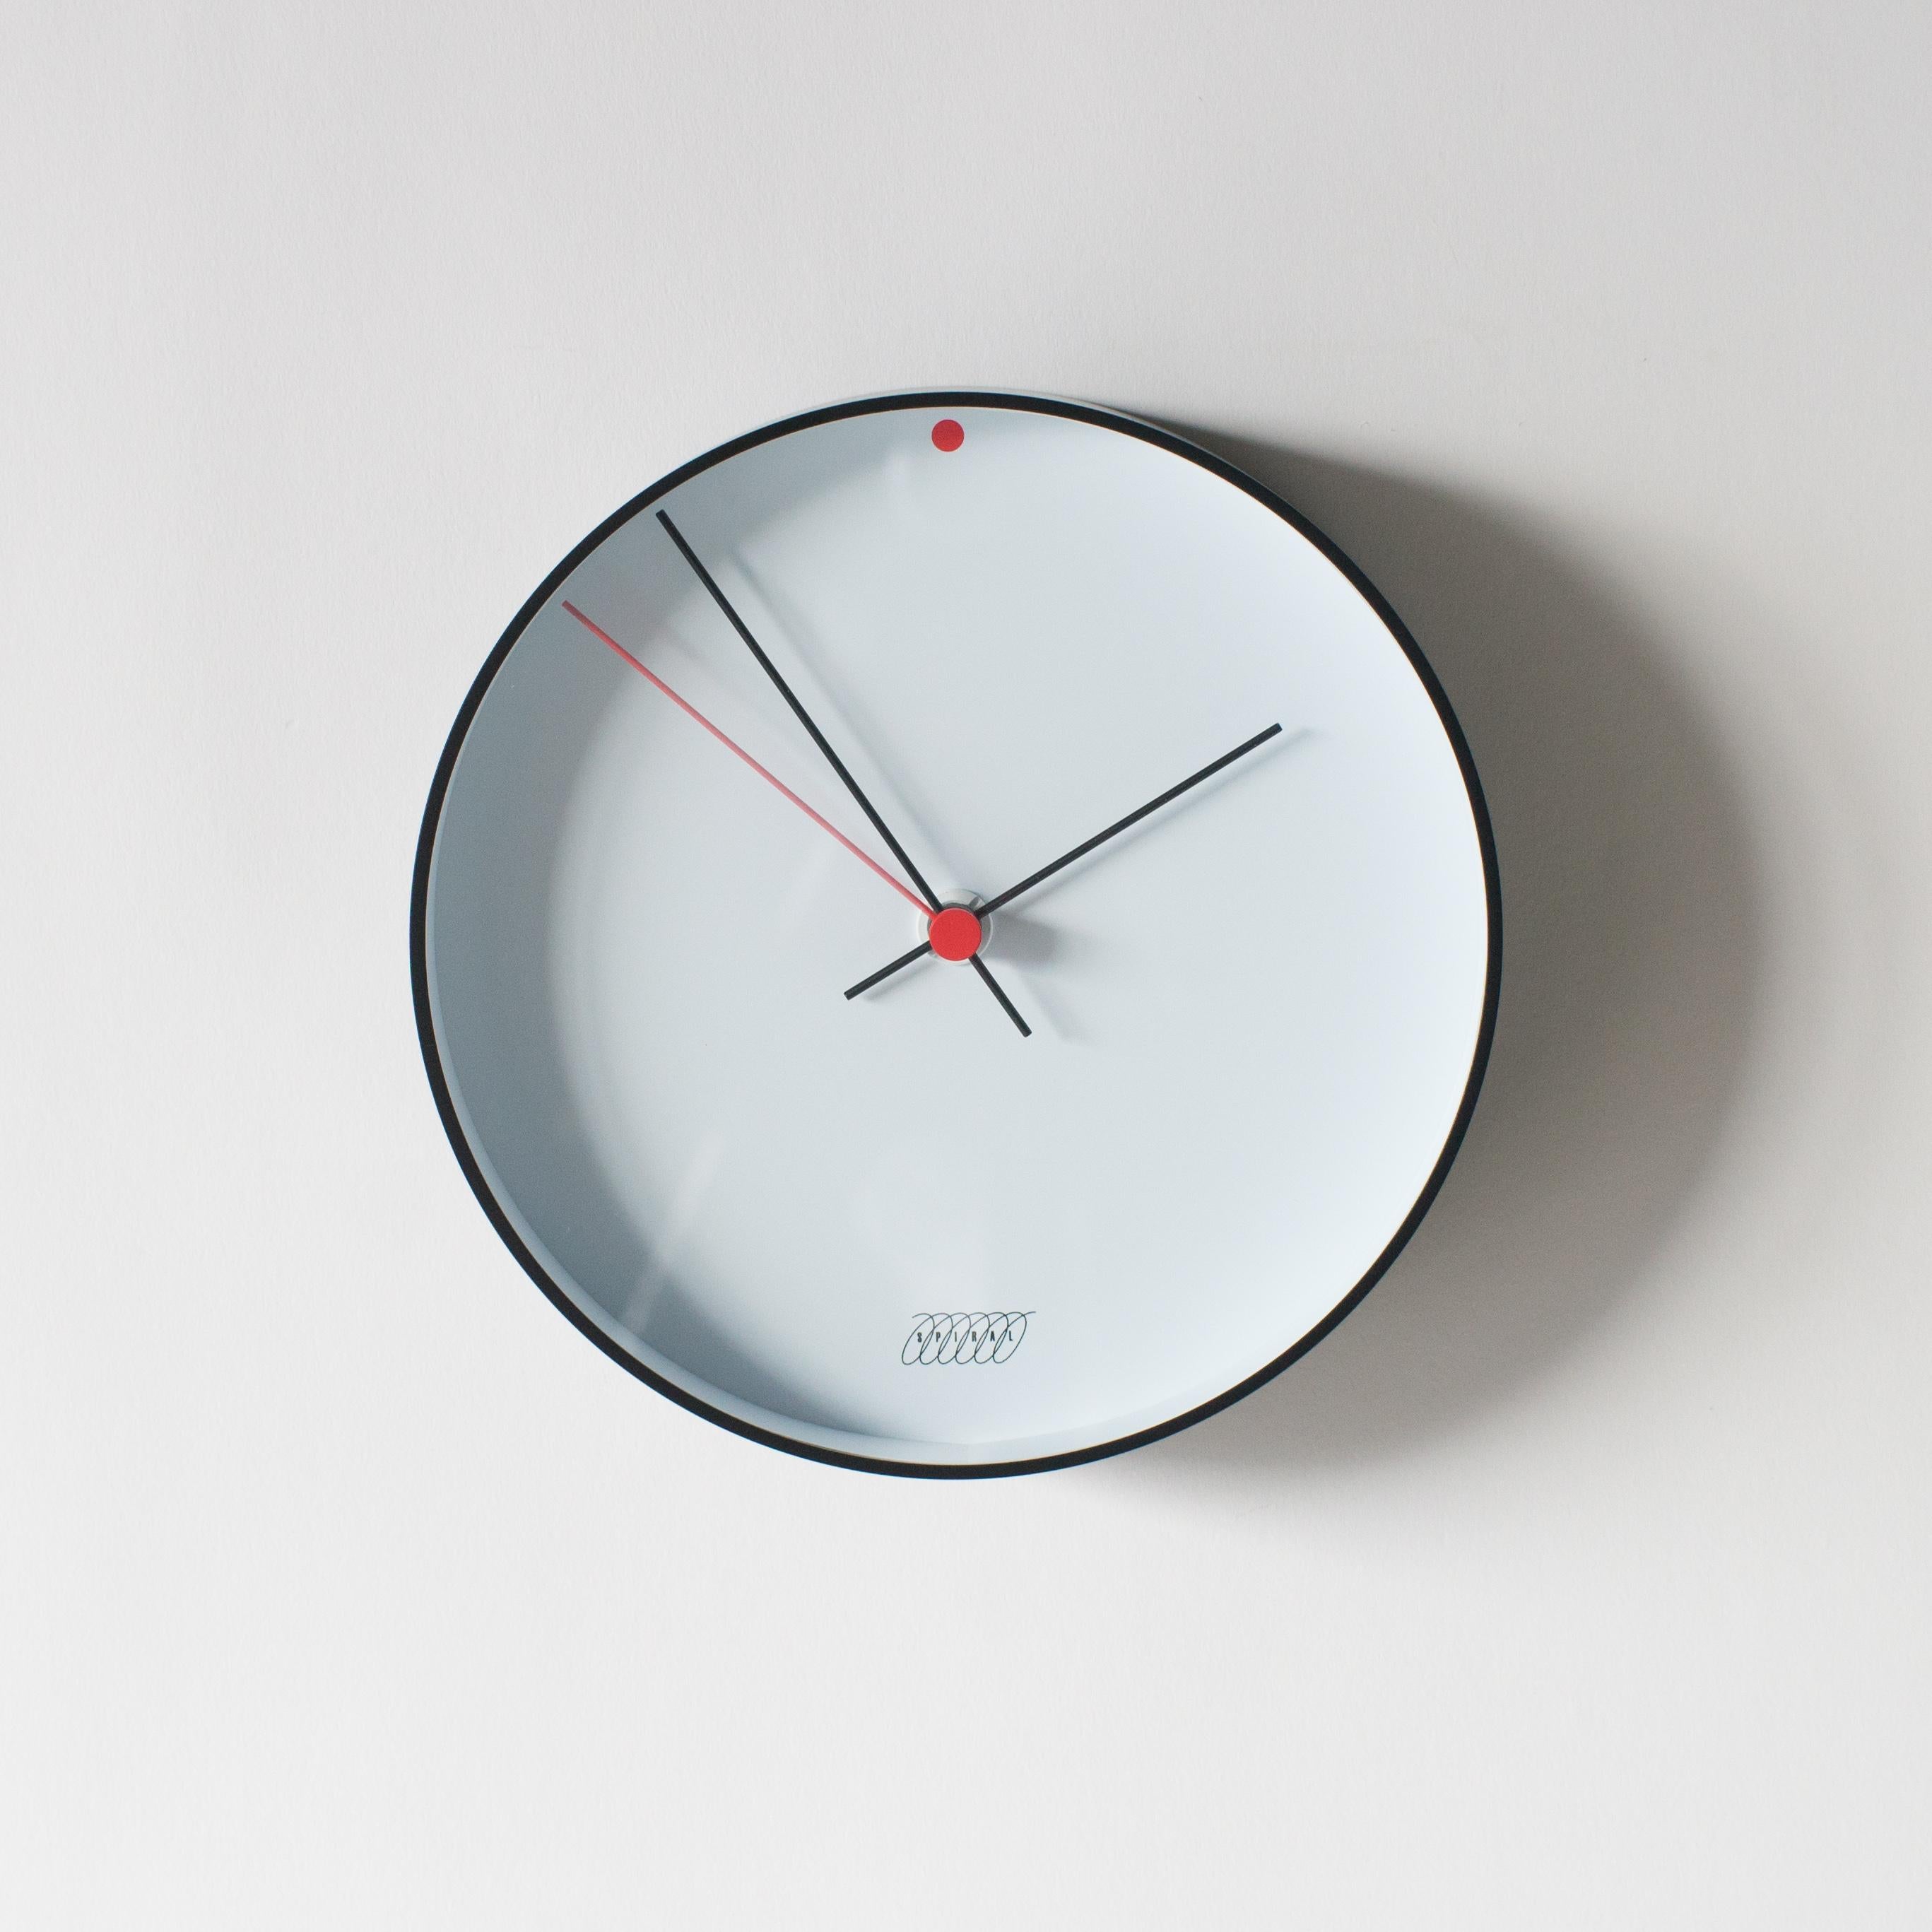 Late 20th Century Spiral Clock B Shiro Kuramata Japanese Zen Minimal Postmodern